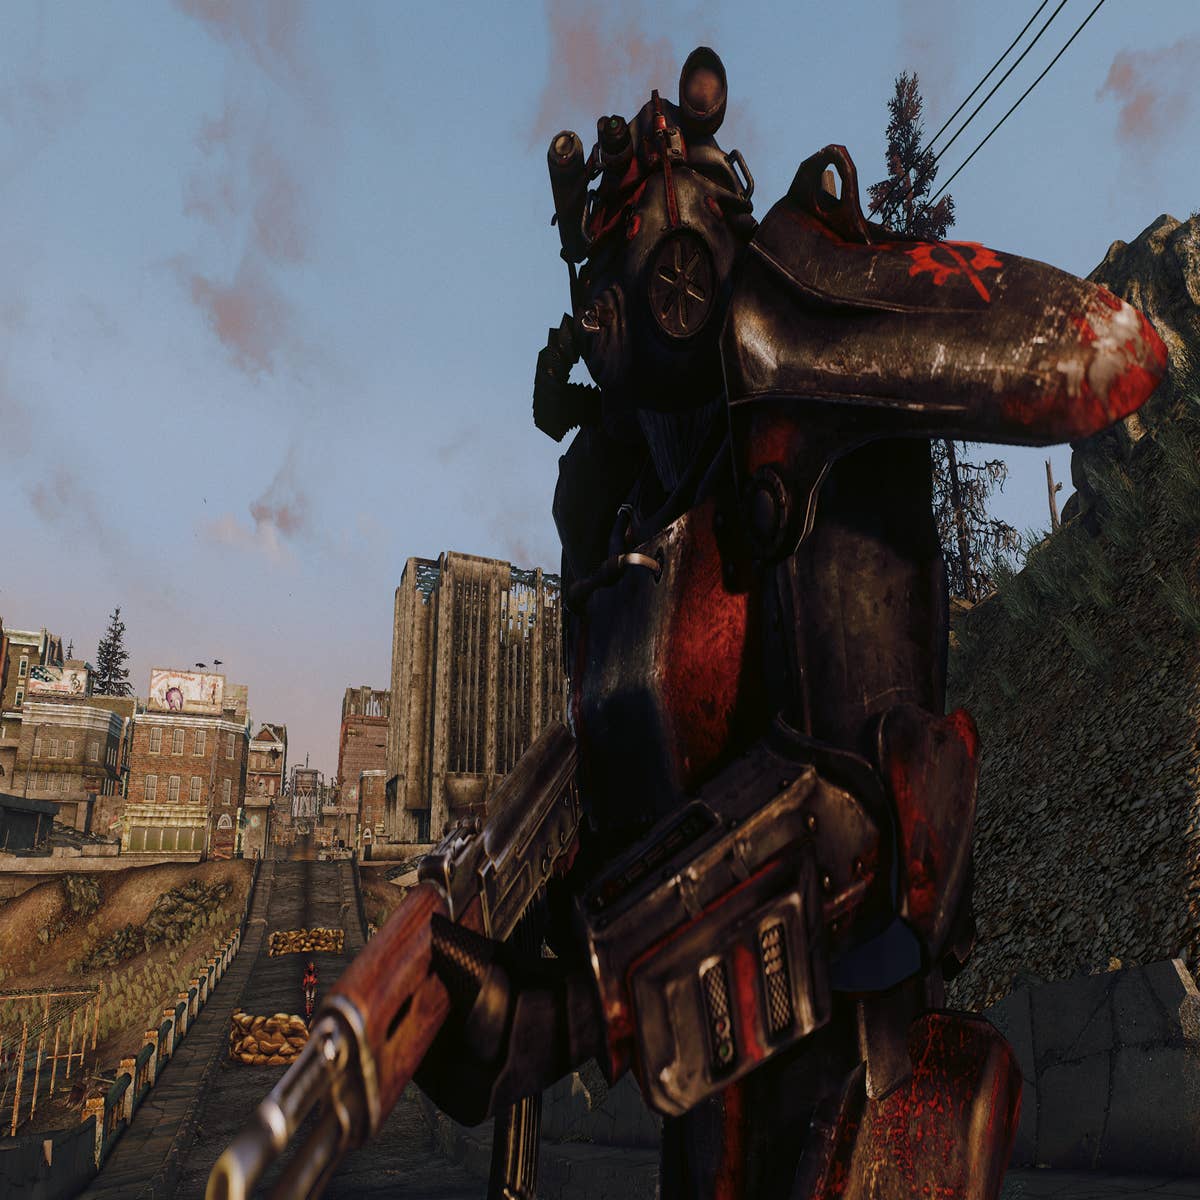 Fallout 3: Requisitos mínimos y recomendados en PC - Vandal